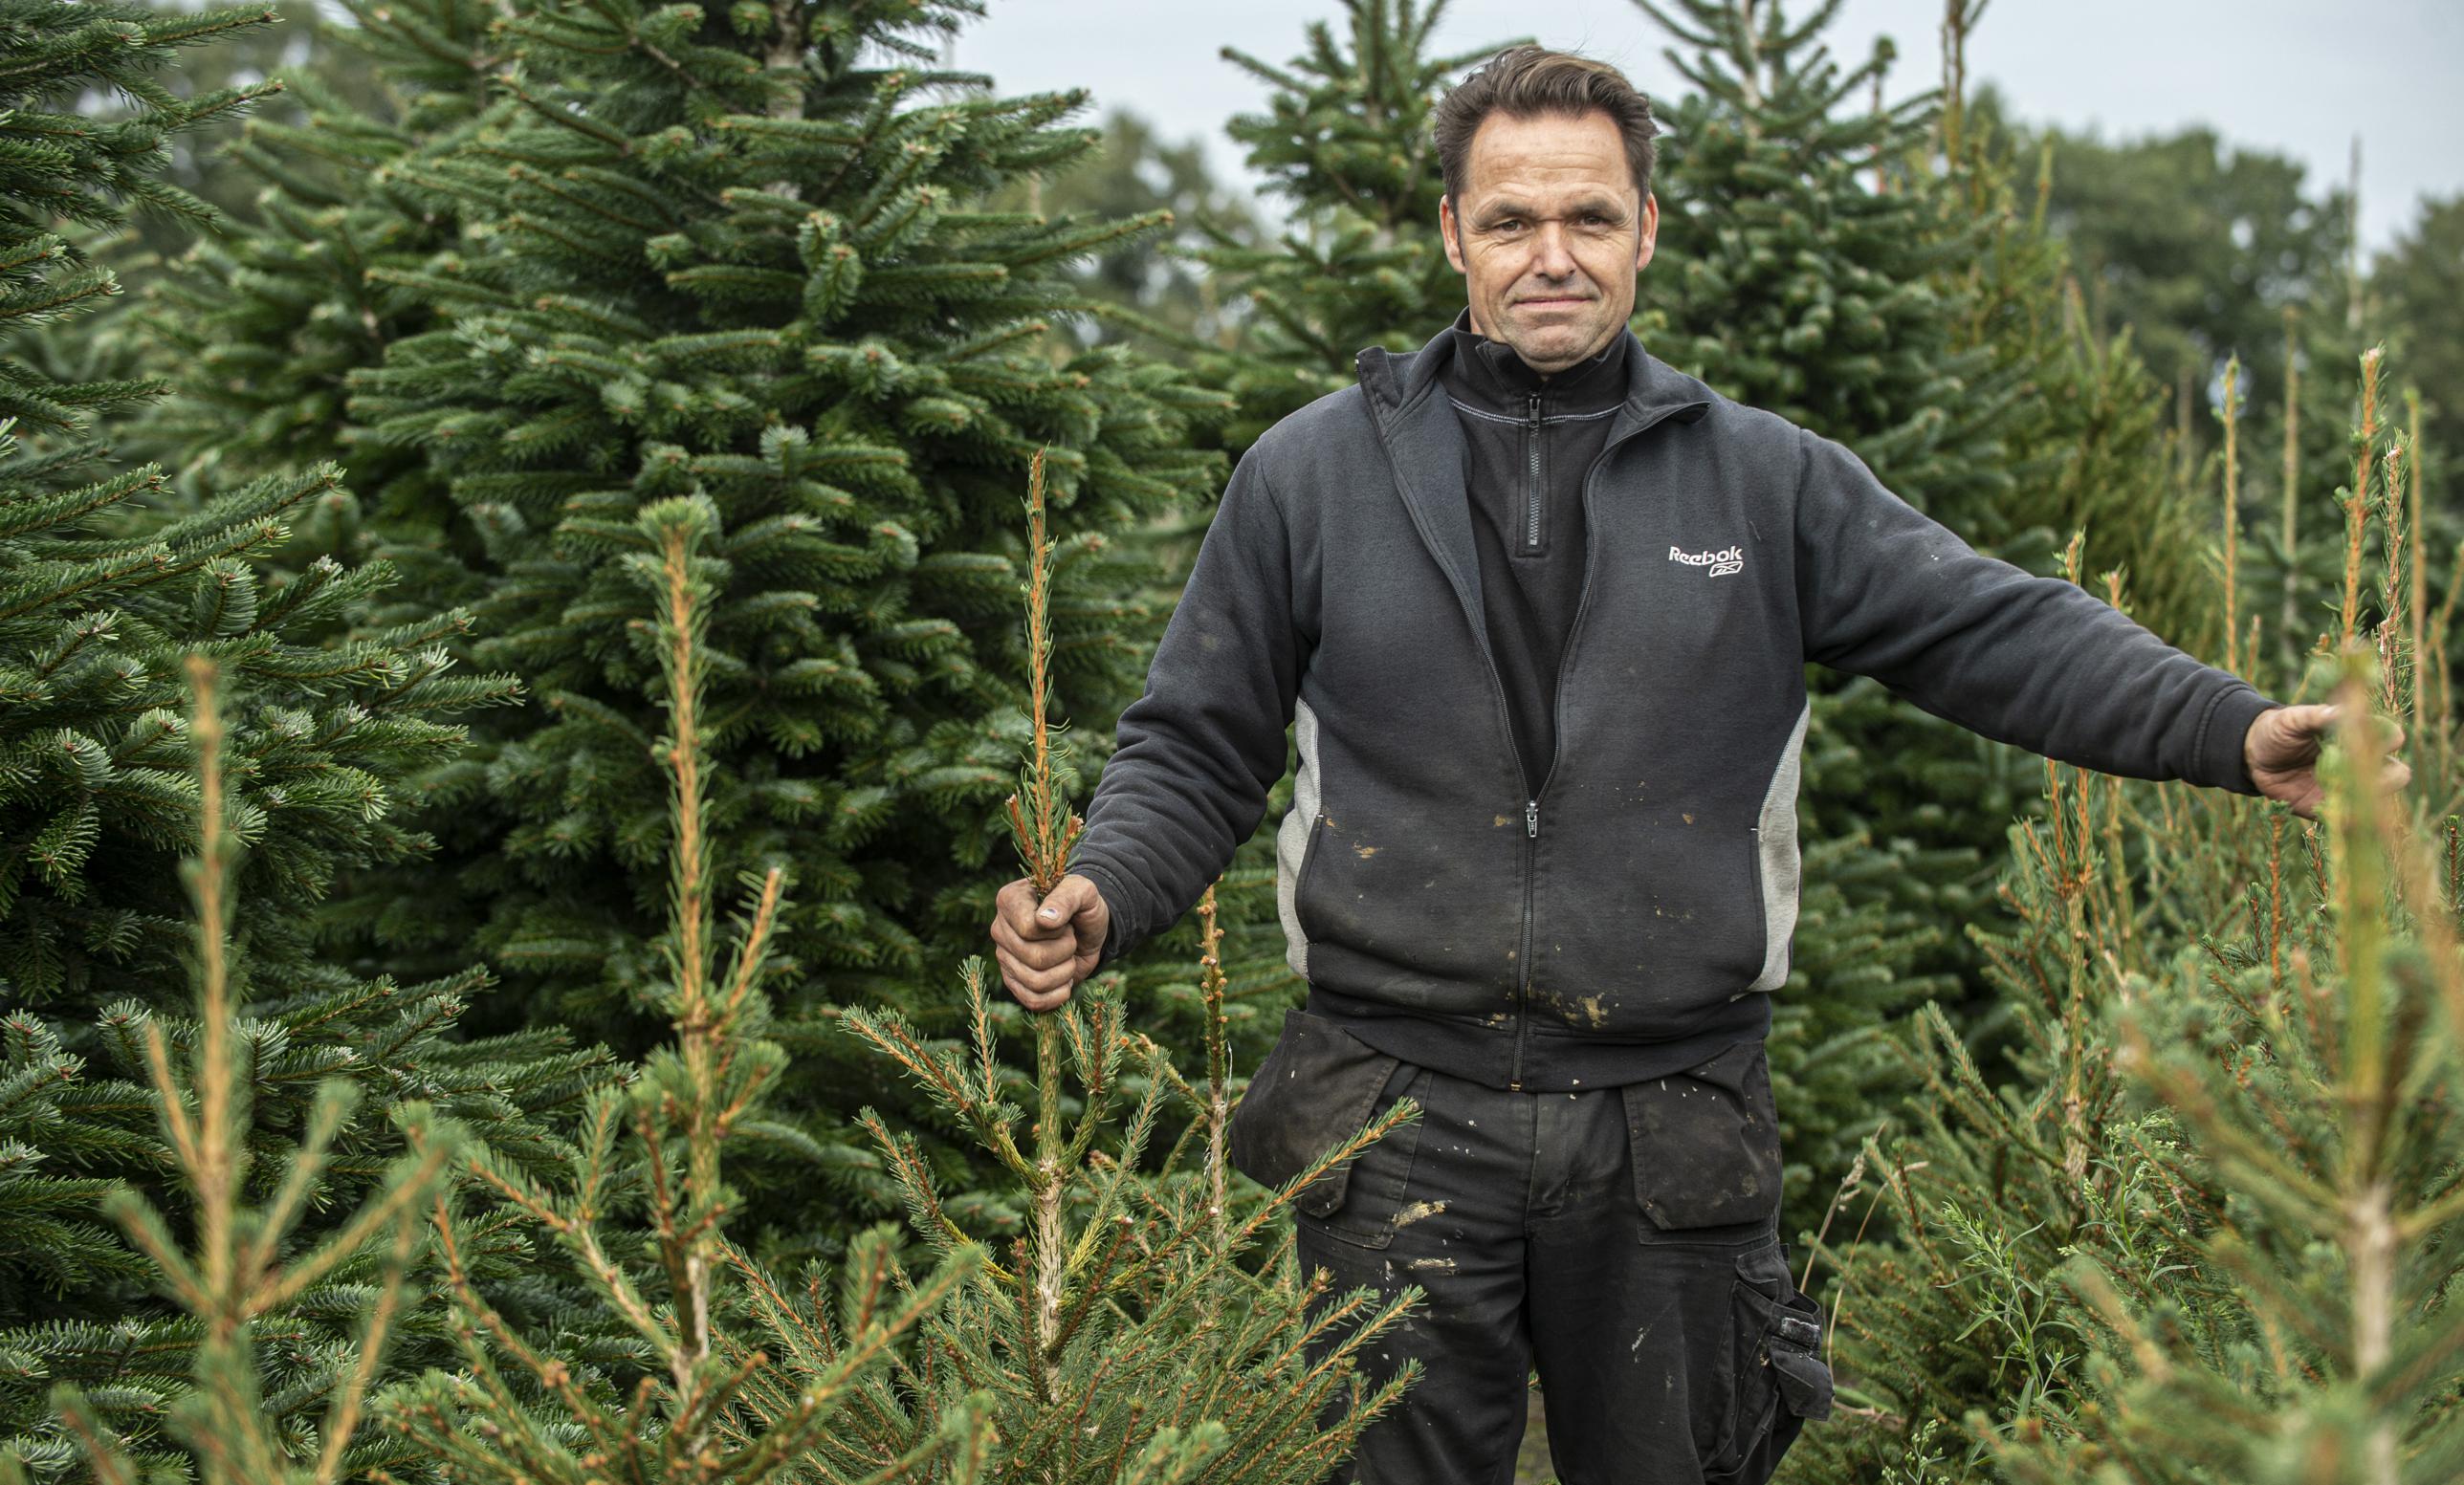 samenkomen Pastoor verwijderen Ikea stopt met verkoop echte kerstbomen, maar kwekers en verkopers in onze  regio zien vraag voorlopig niet afnemen | Gazet van Antwerpen Mobile